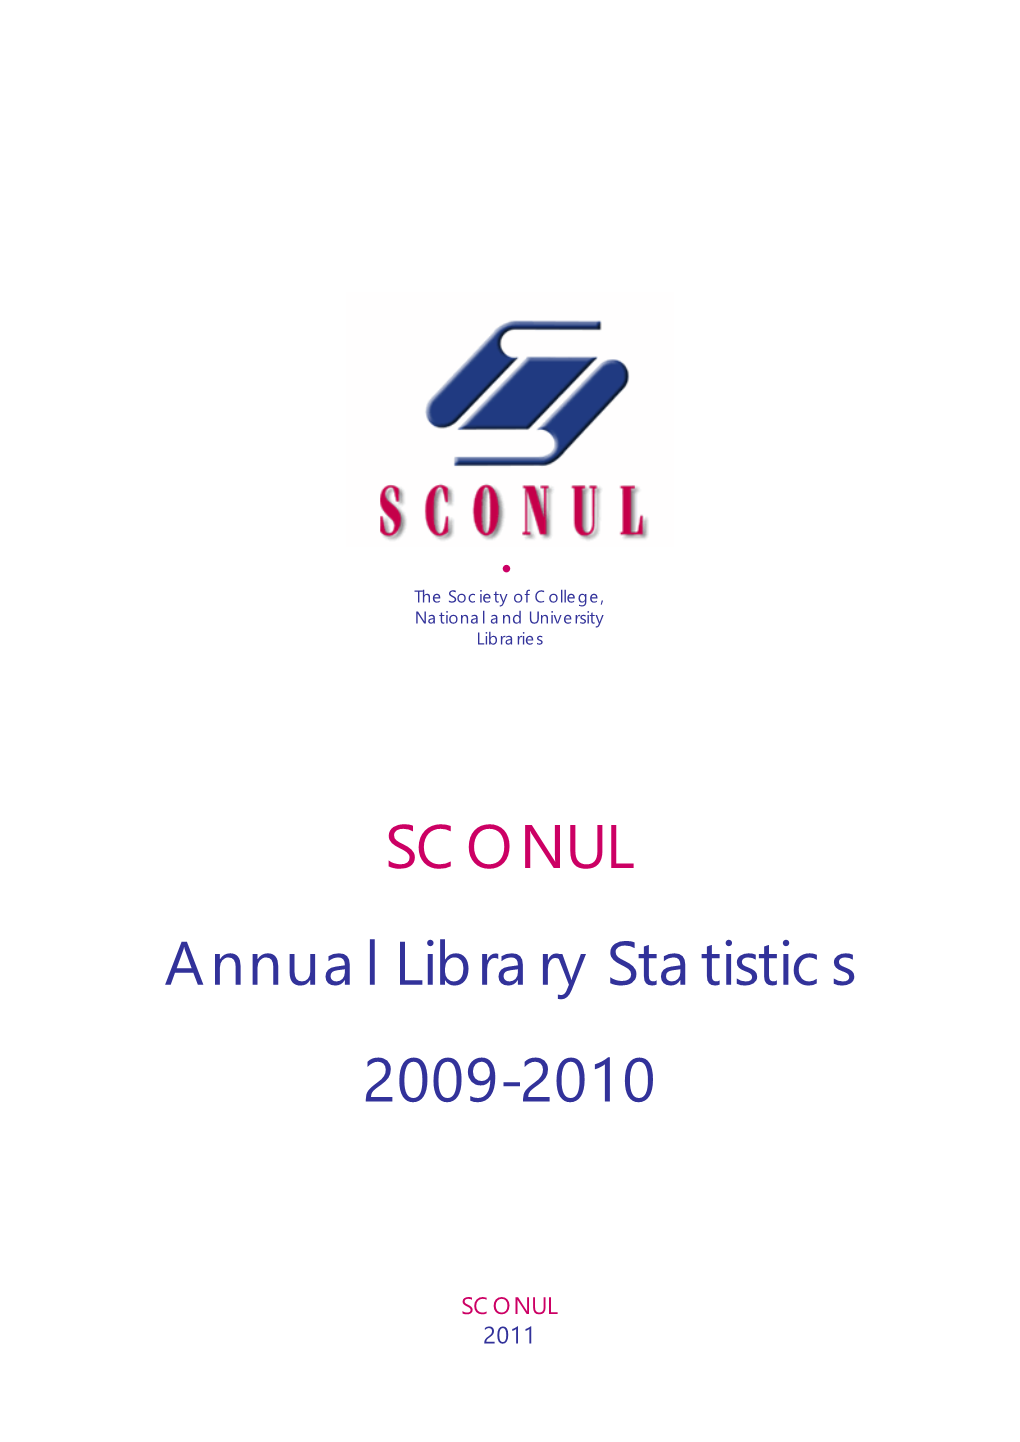 SCONUL Annual Library Statistics 2009-2010